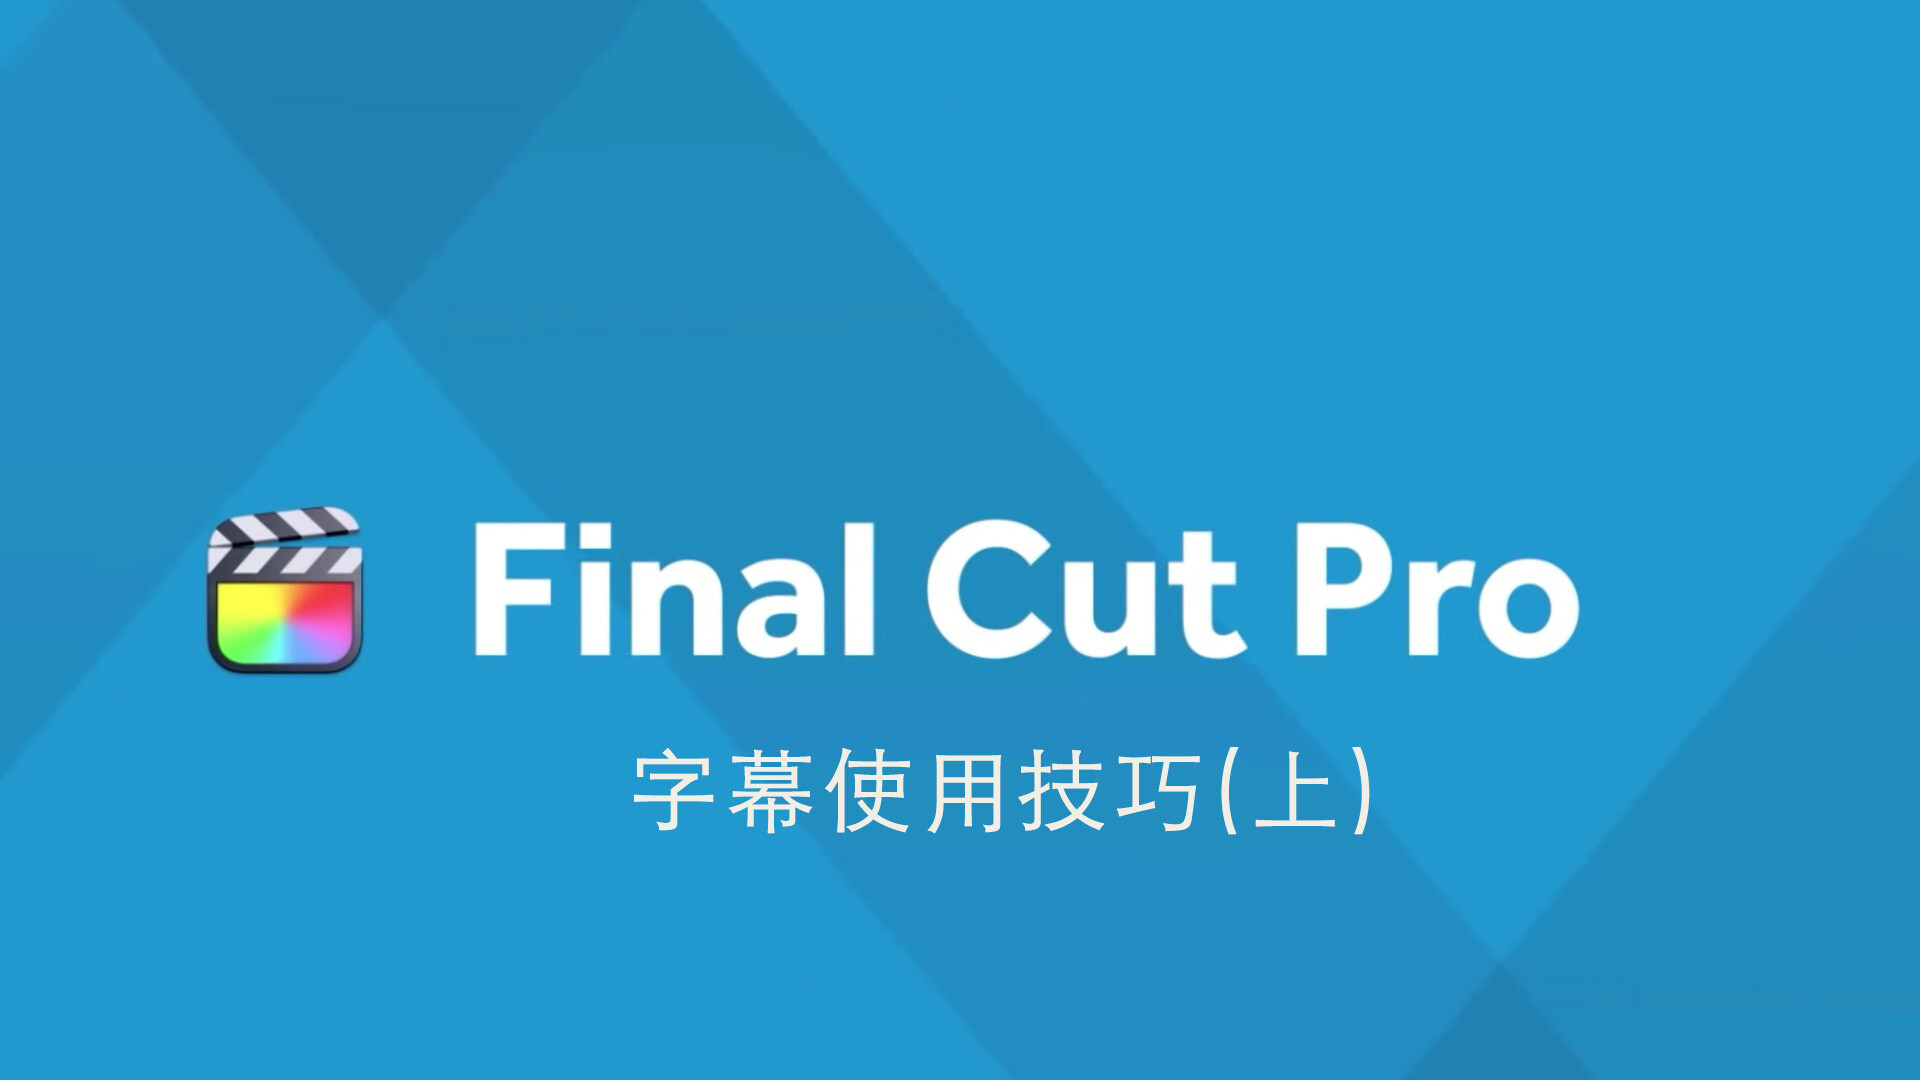 Final Cut Pro 中文基础教程(61)字幕技巧「上」